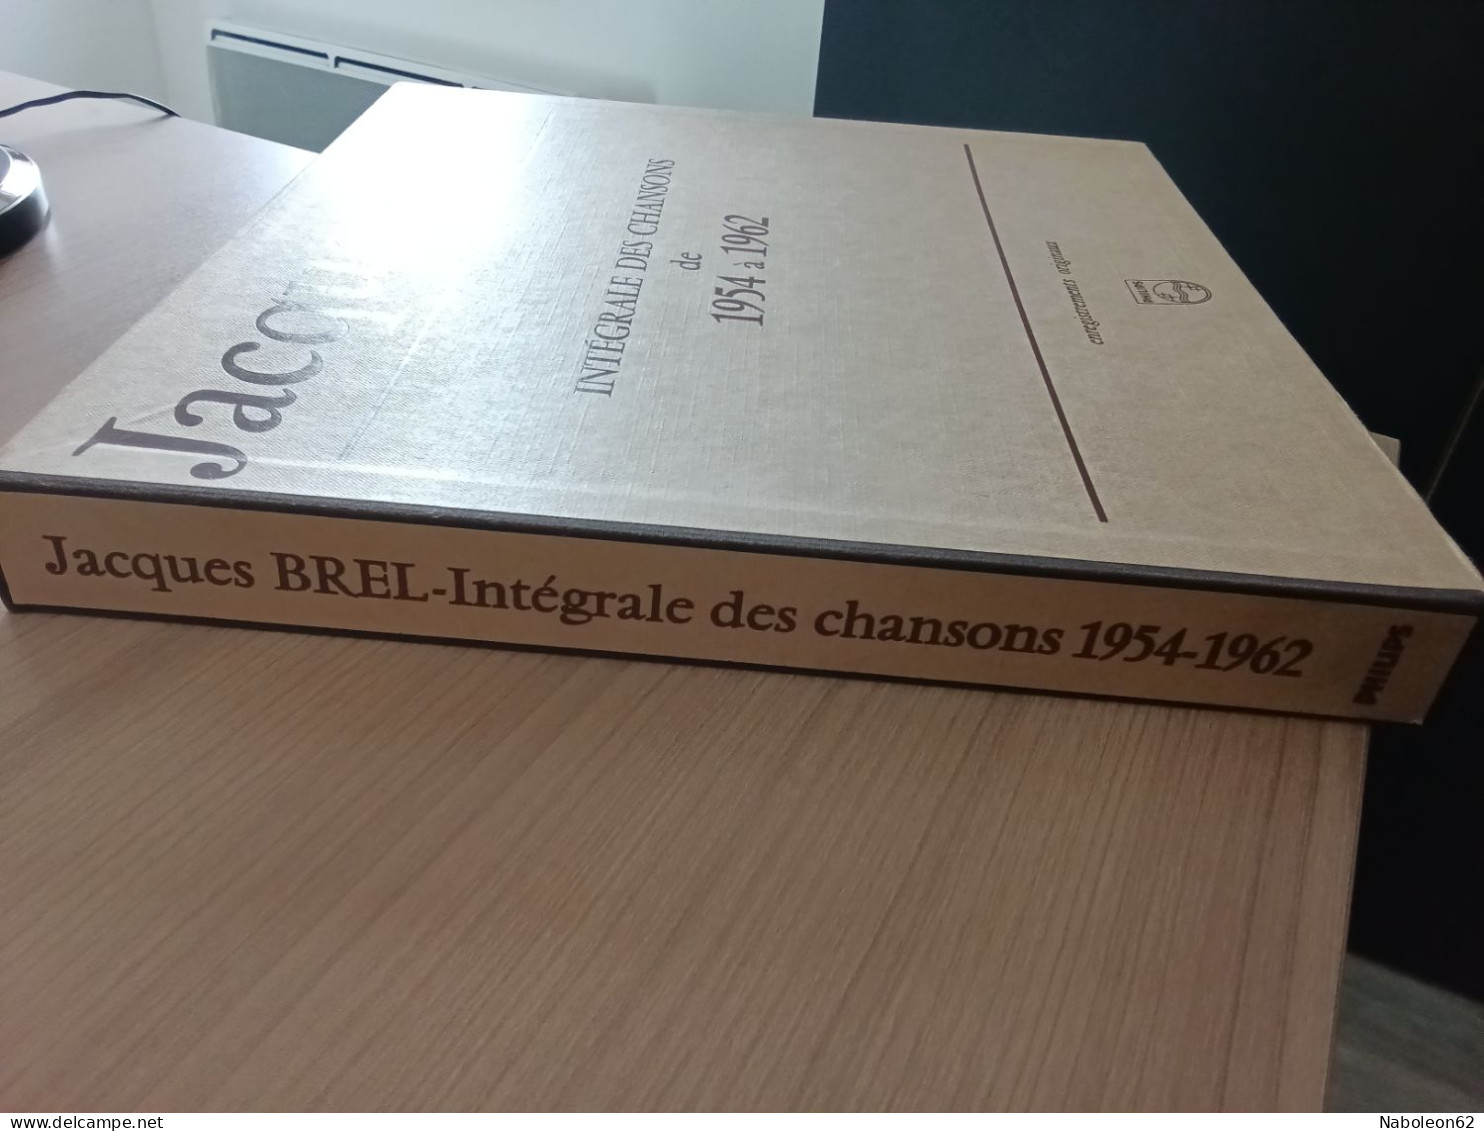 Coffret Jacques Brel Intégrale Des Chansons De 1954 à 1962 - Autres - Musique Française